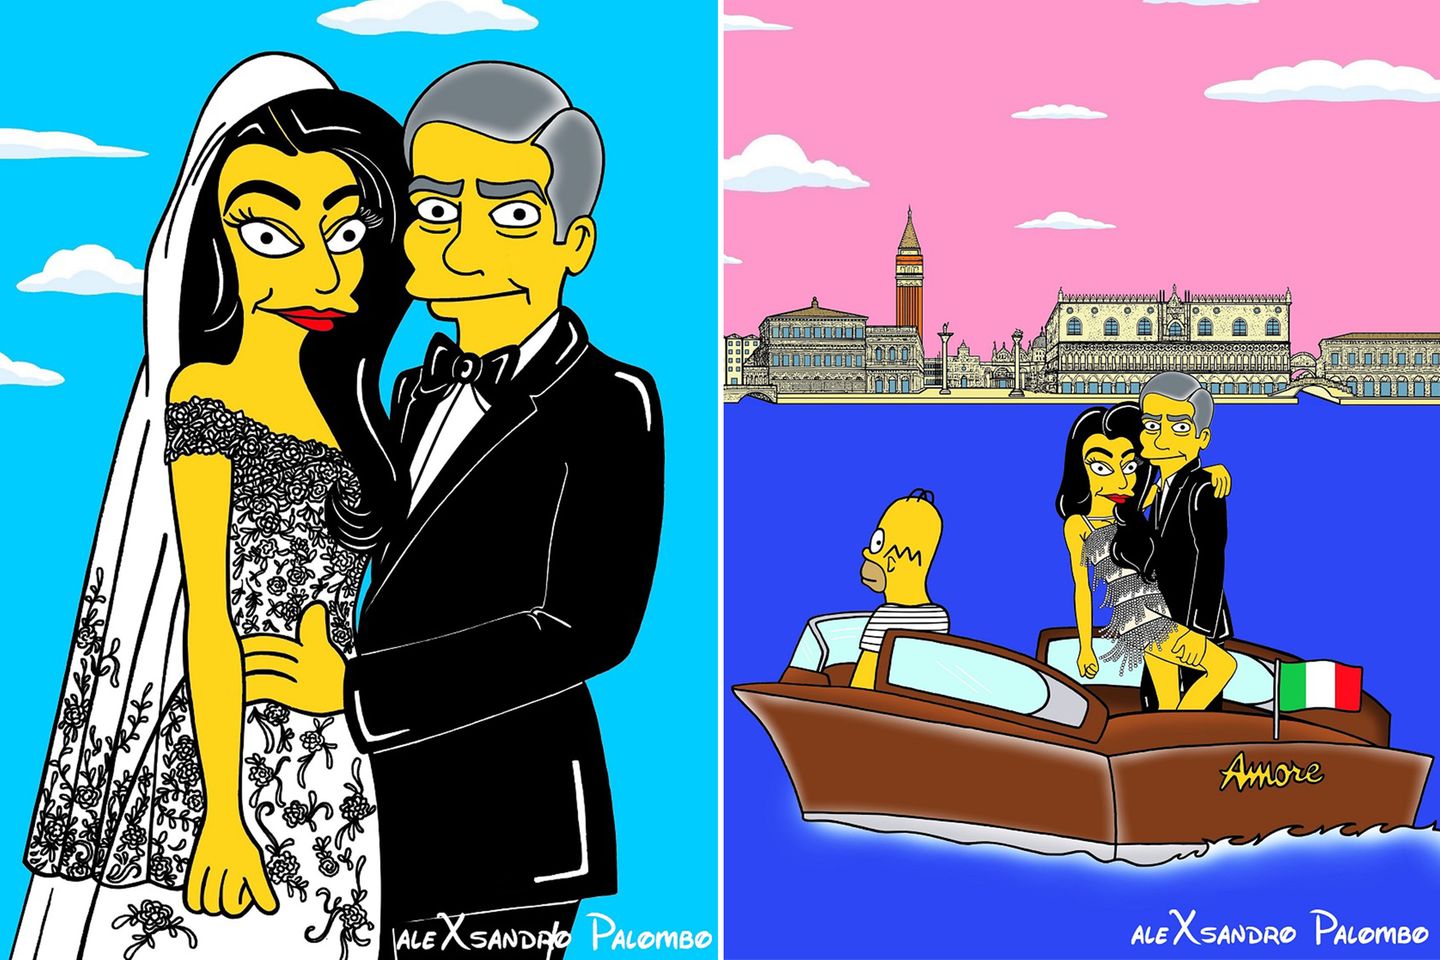 Amal Alamuddin und George Clooney bekommen von Künstler aleXandro Palombo die "Simpson-Behandlung".